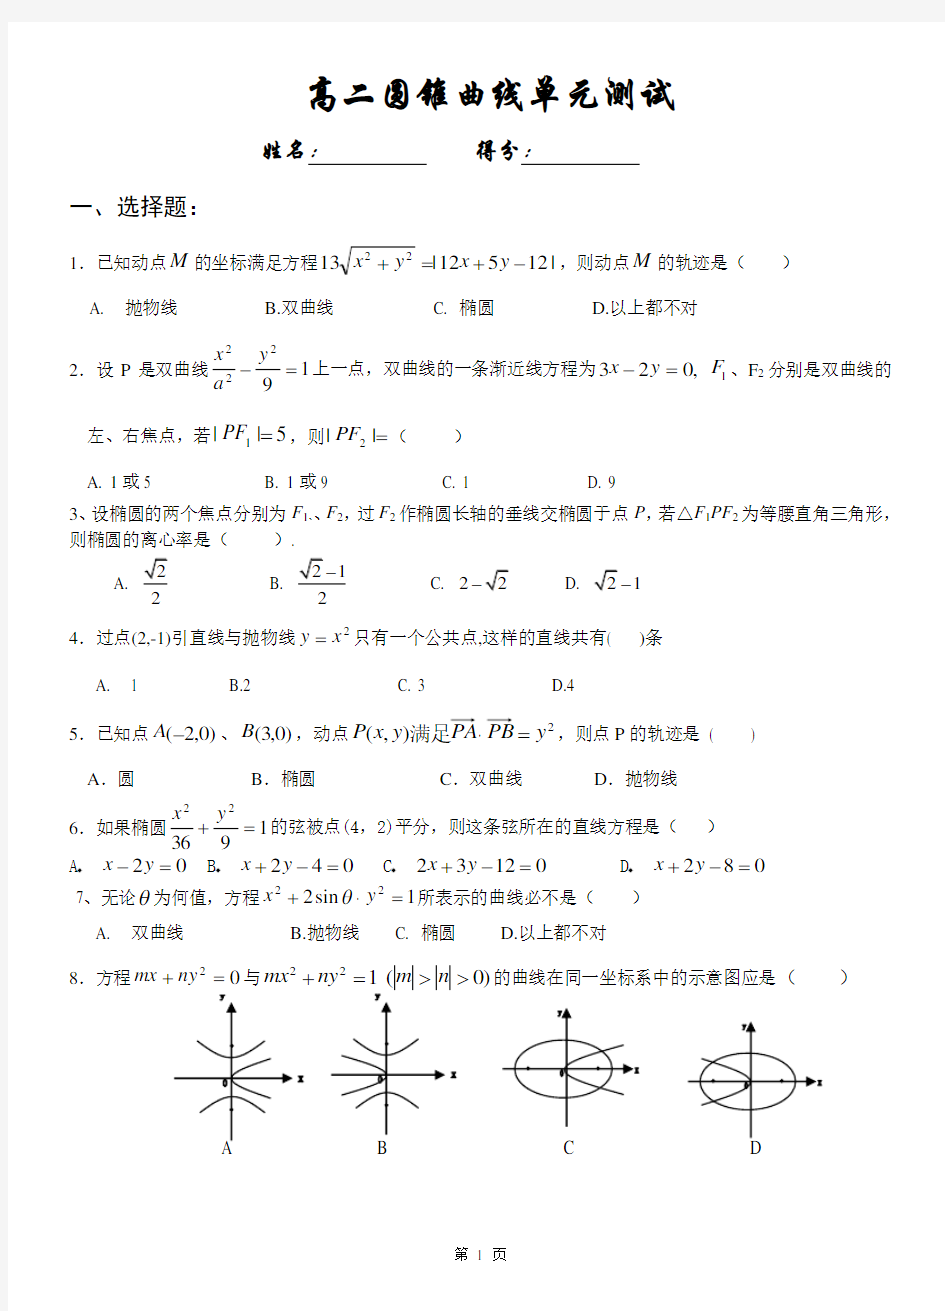 人教版高二数学选修2-1第二章圆锥曲线测试题以及详细答案